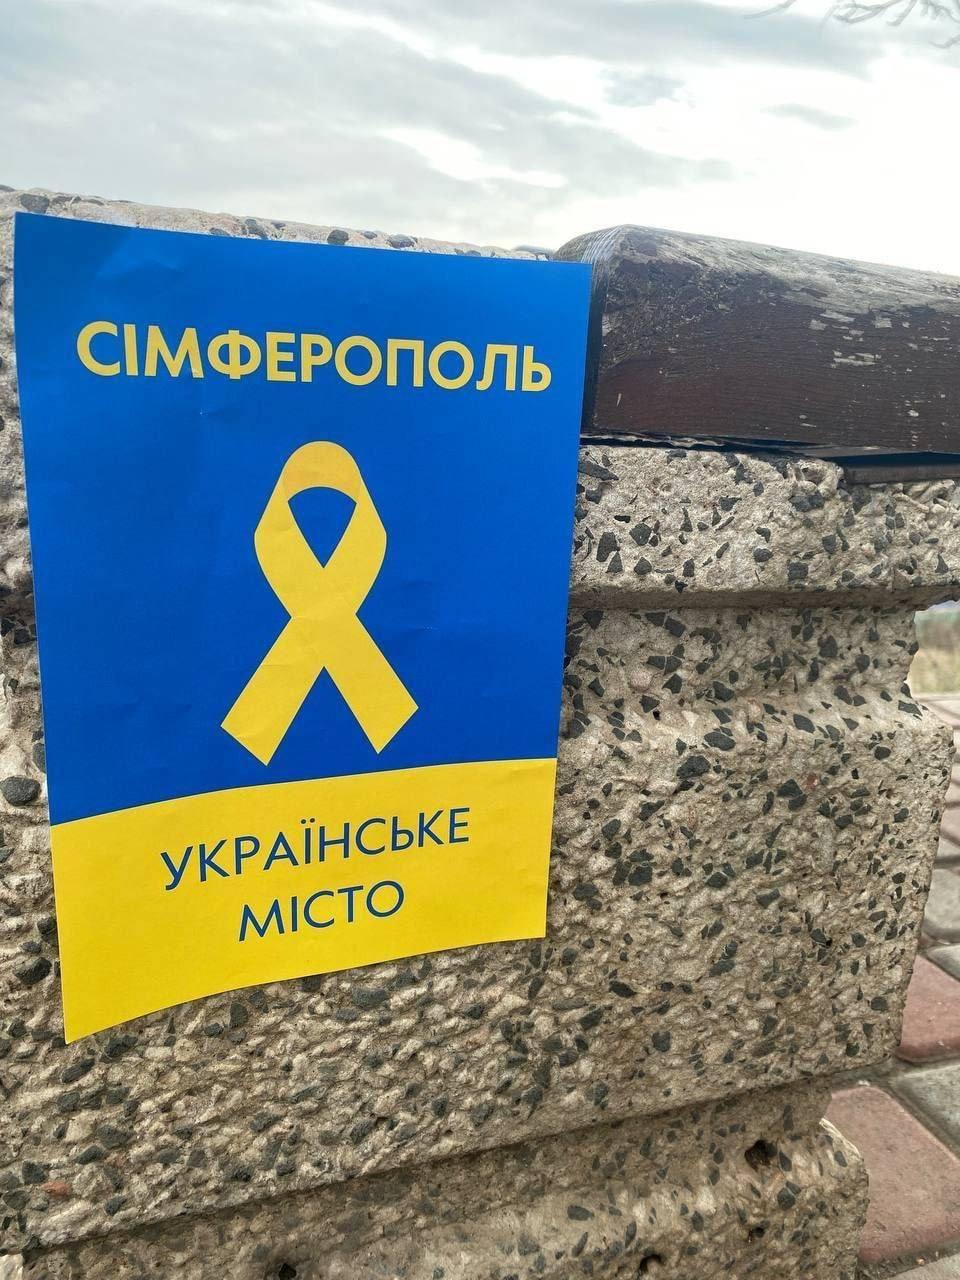 Crimean resistance